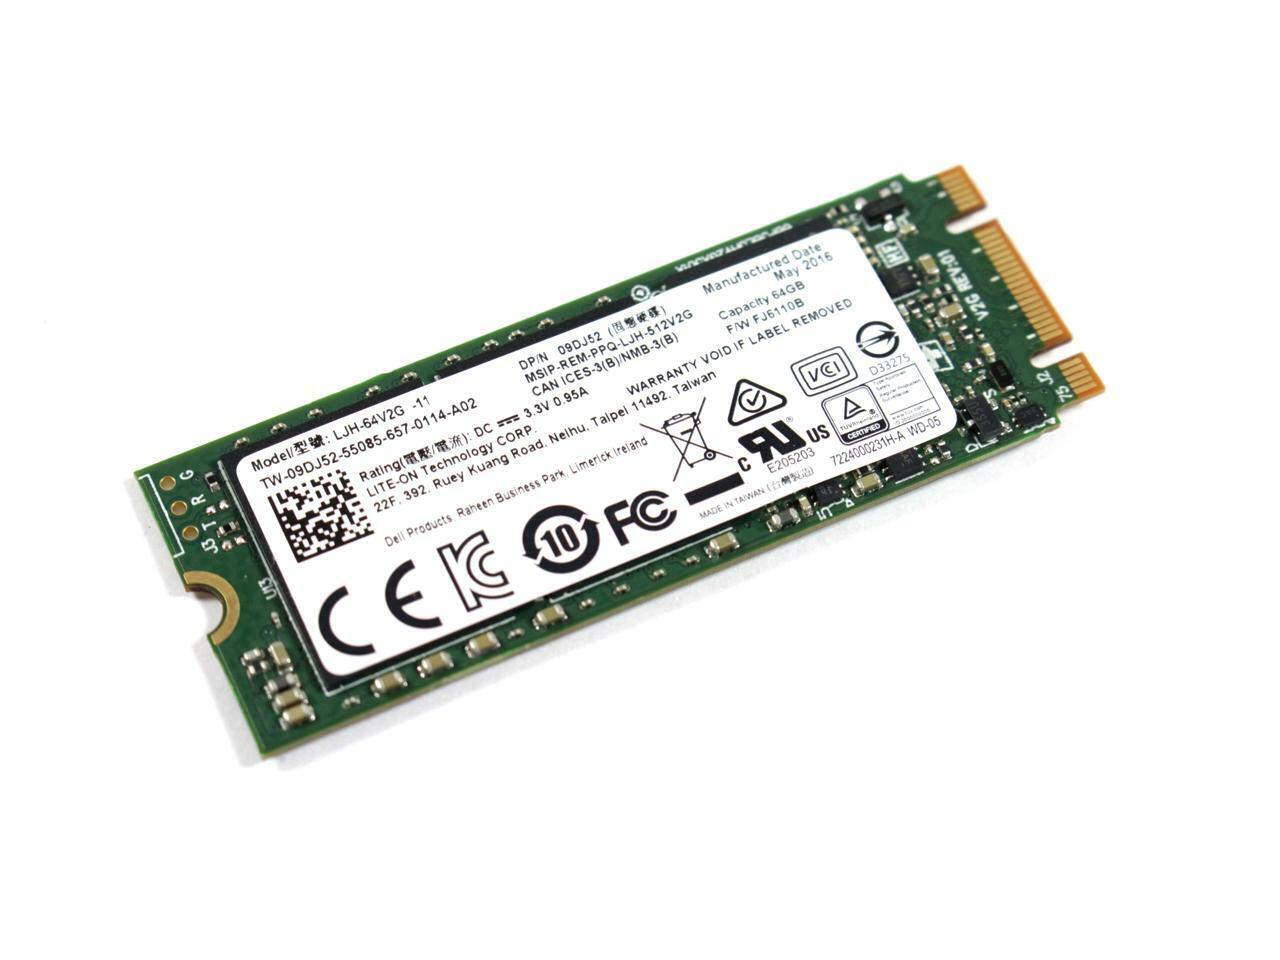 New Liteon LJH-64V2G M.2 64GB Solid State Drive Dell 9DJ52 2260 SSD 60mm